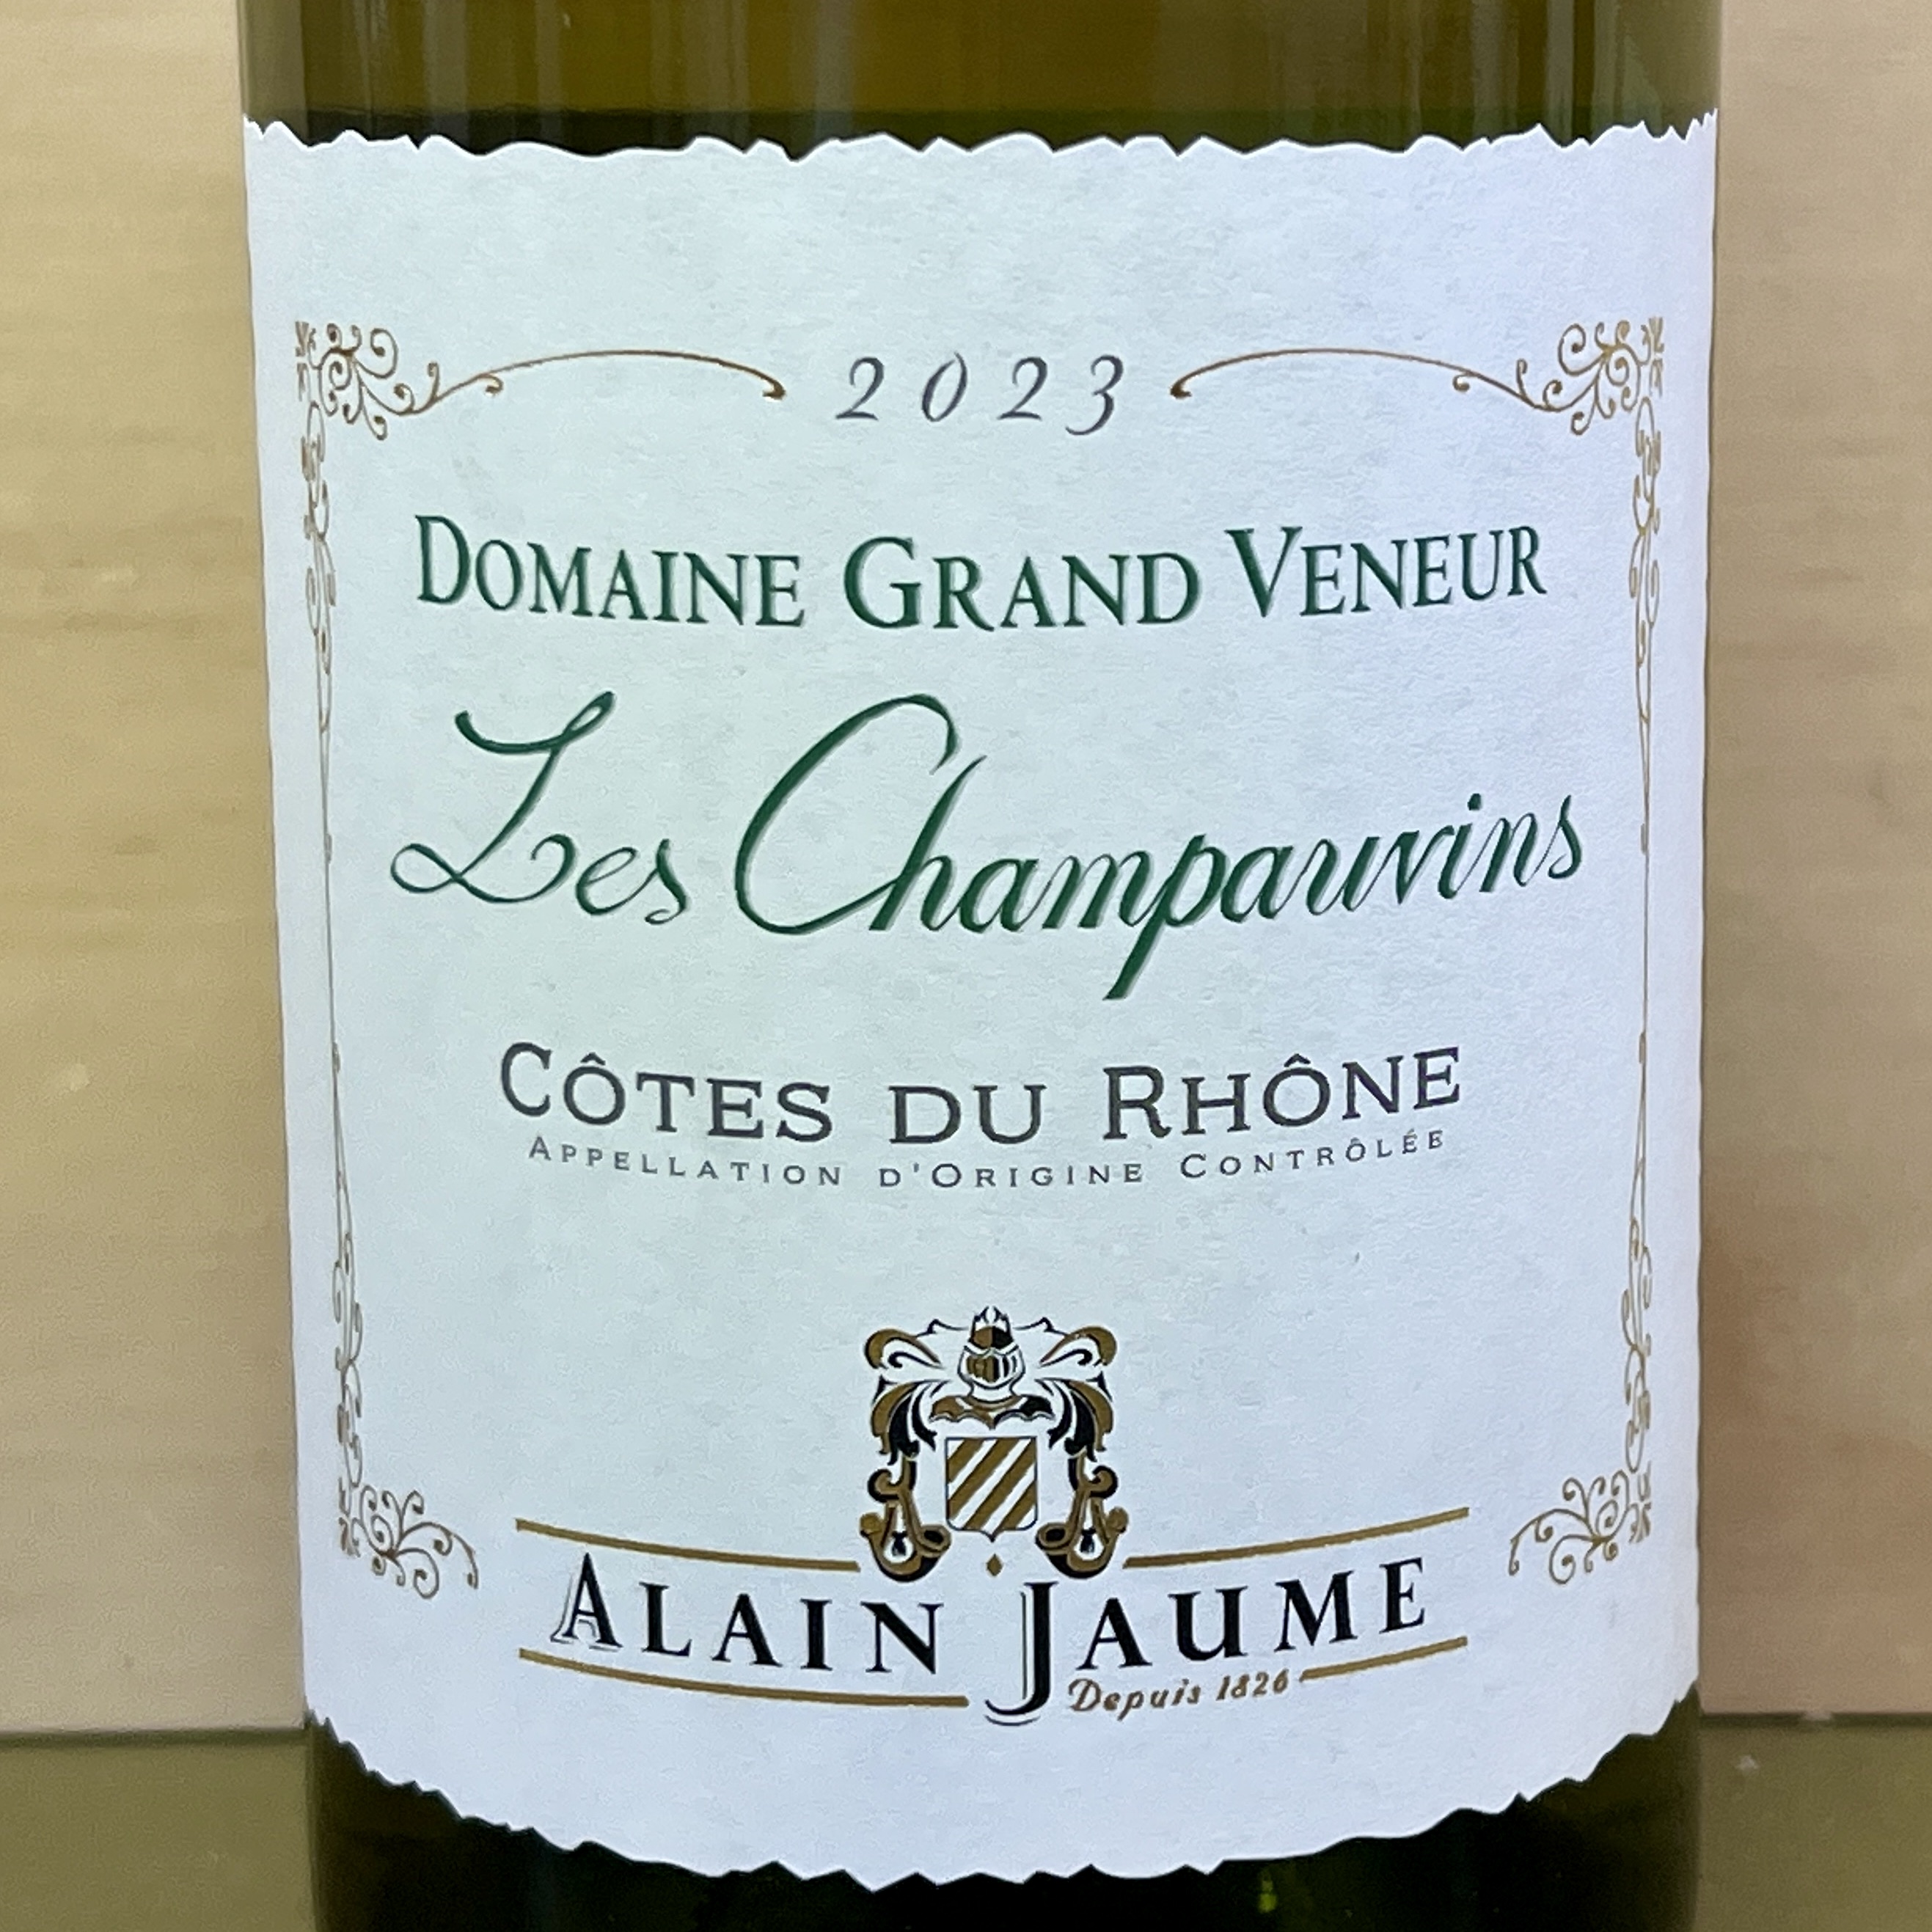 Alain Jaume Domaine Grand Veneur Cotes du Rhone 'Les Champauvins' Viognier 2023